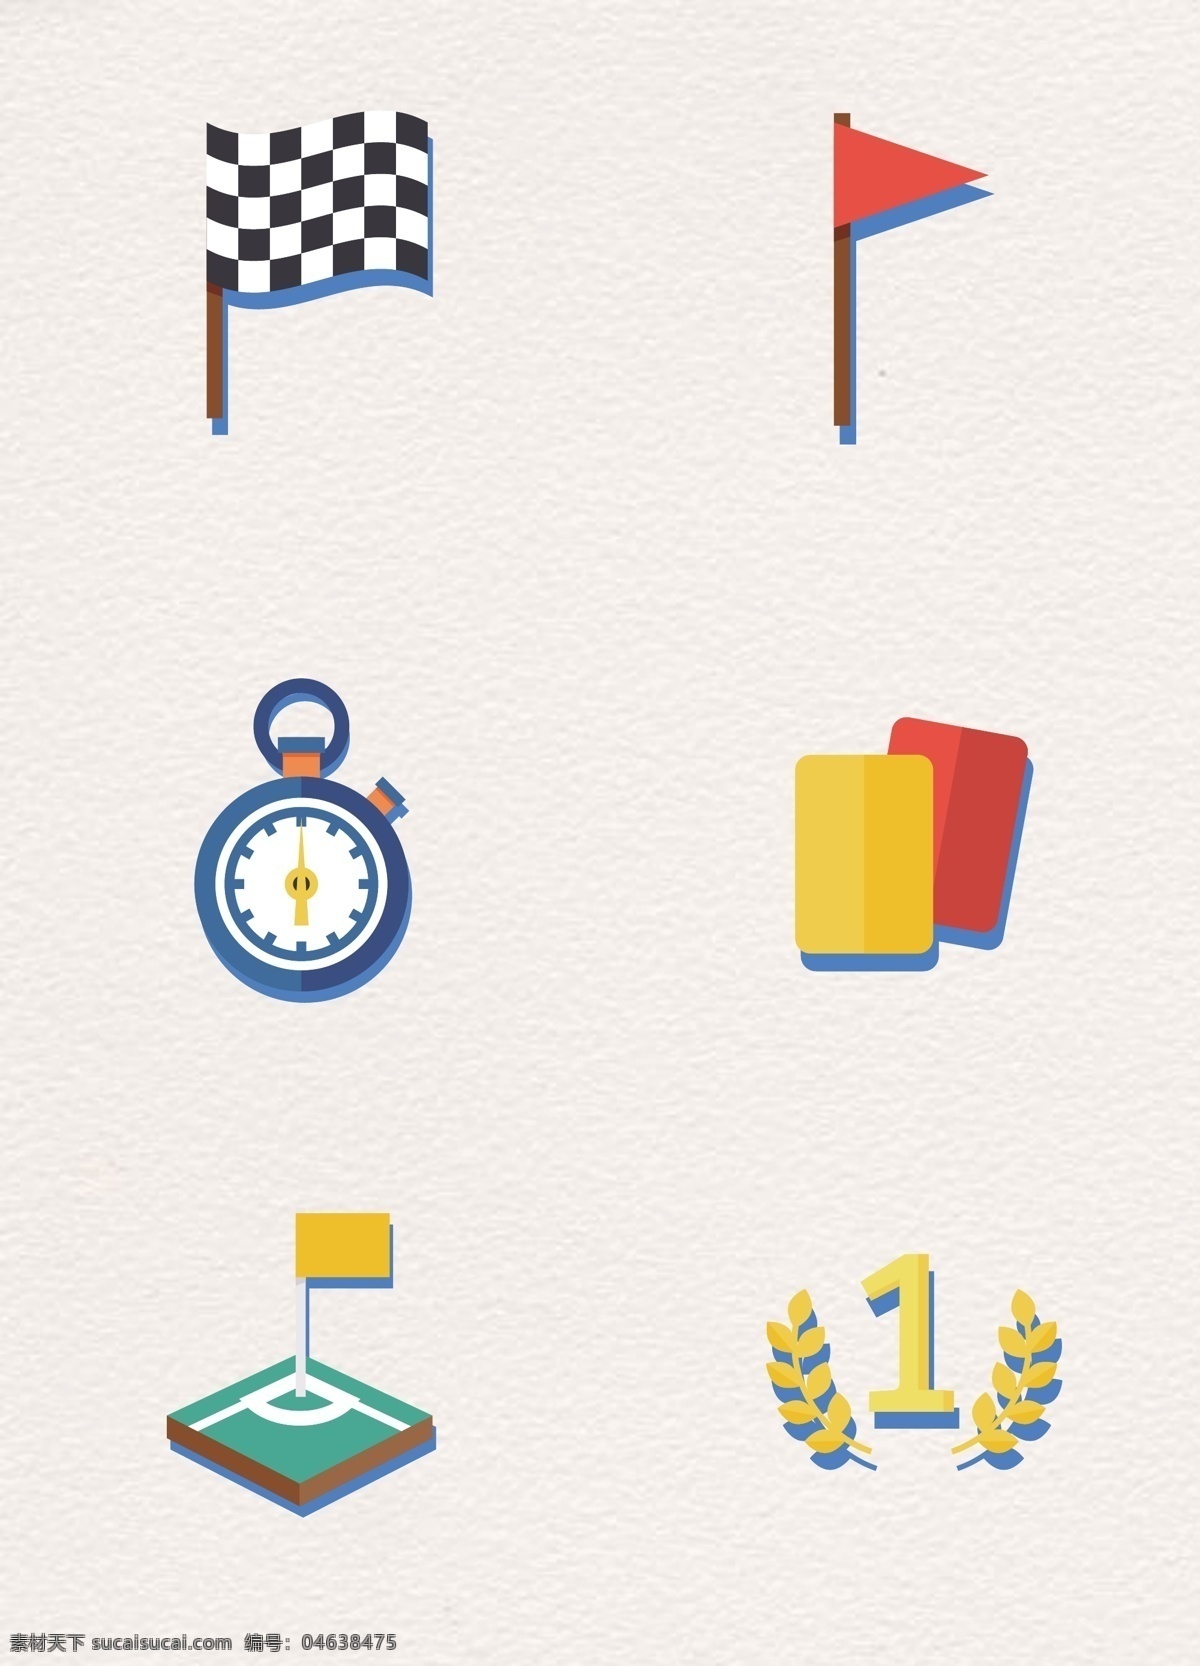 可爱 矢量 足球比赛 裁判 工具 图标素材 卡通 旗子 秒表 红牌 足球比赛图标 黄牌 裁判工具